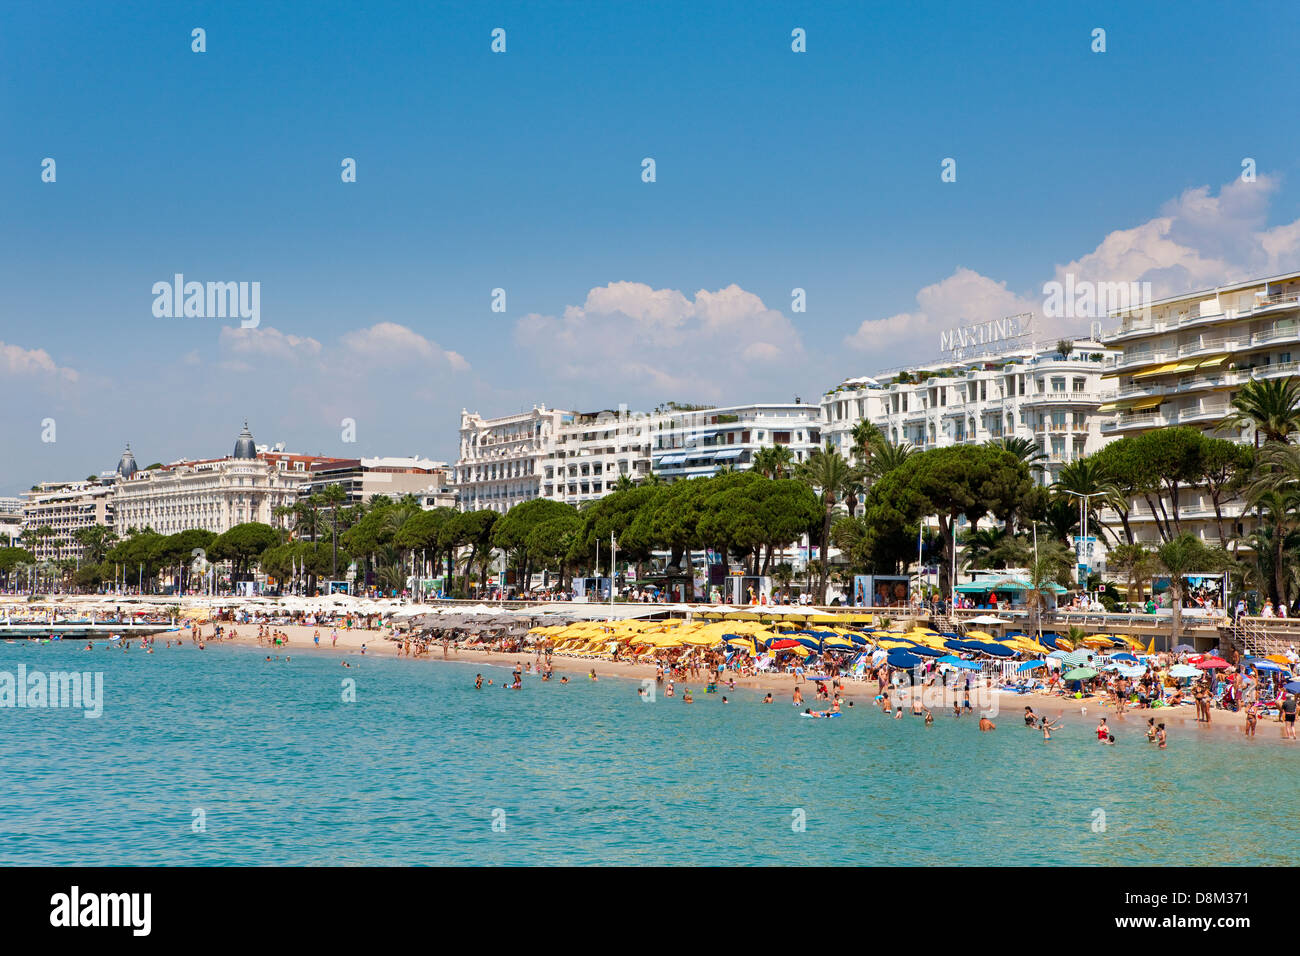 The famous hotel Martinez, Boulevard de la Croisette along the waterfront, Cannes, France Stock Photo